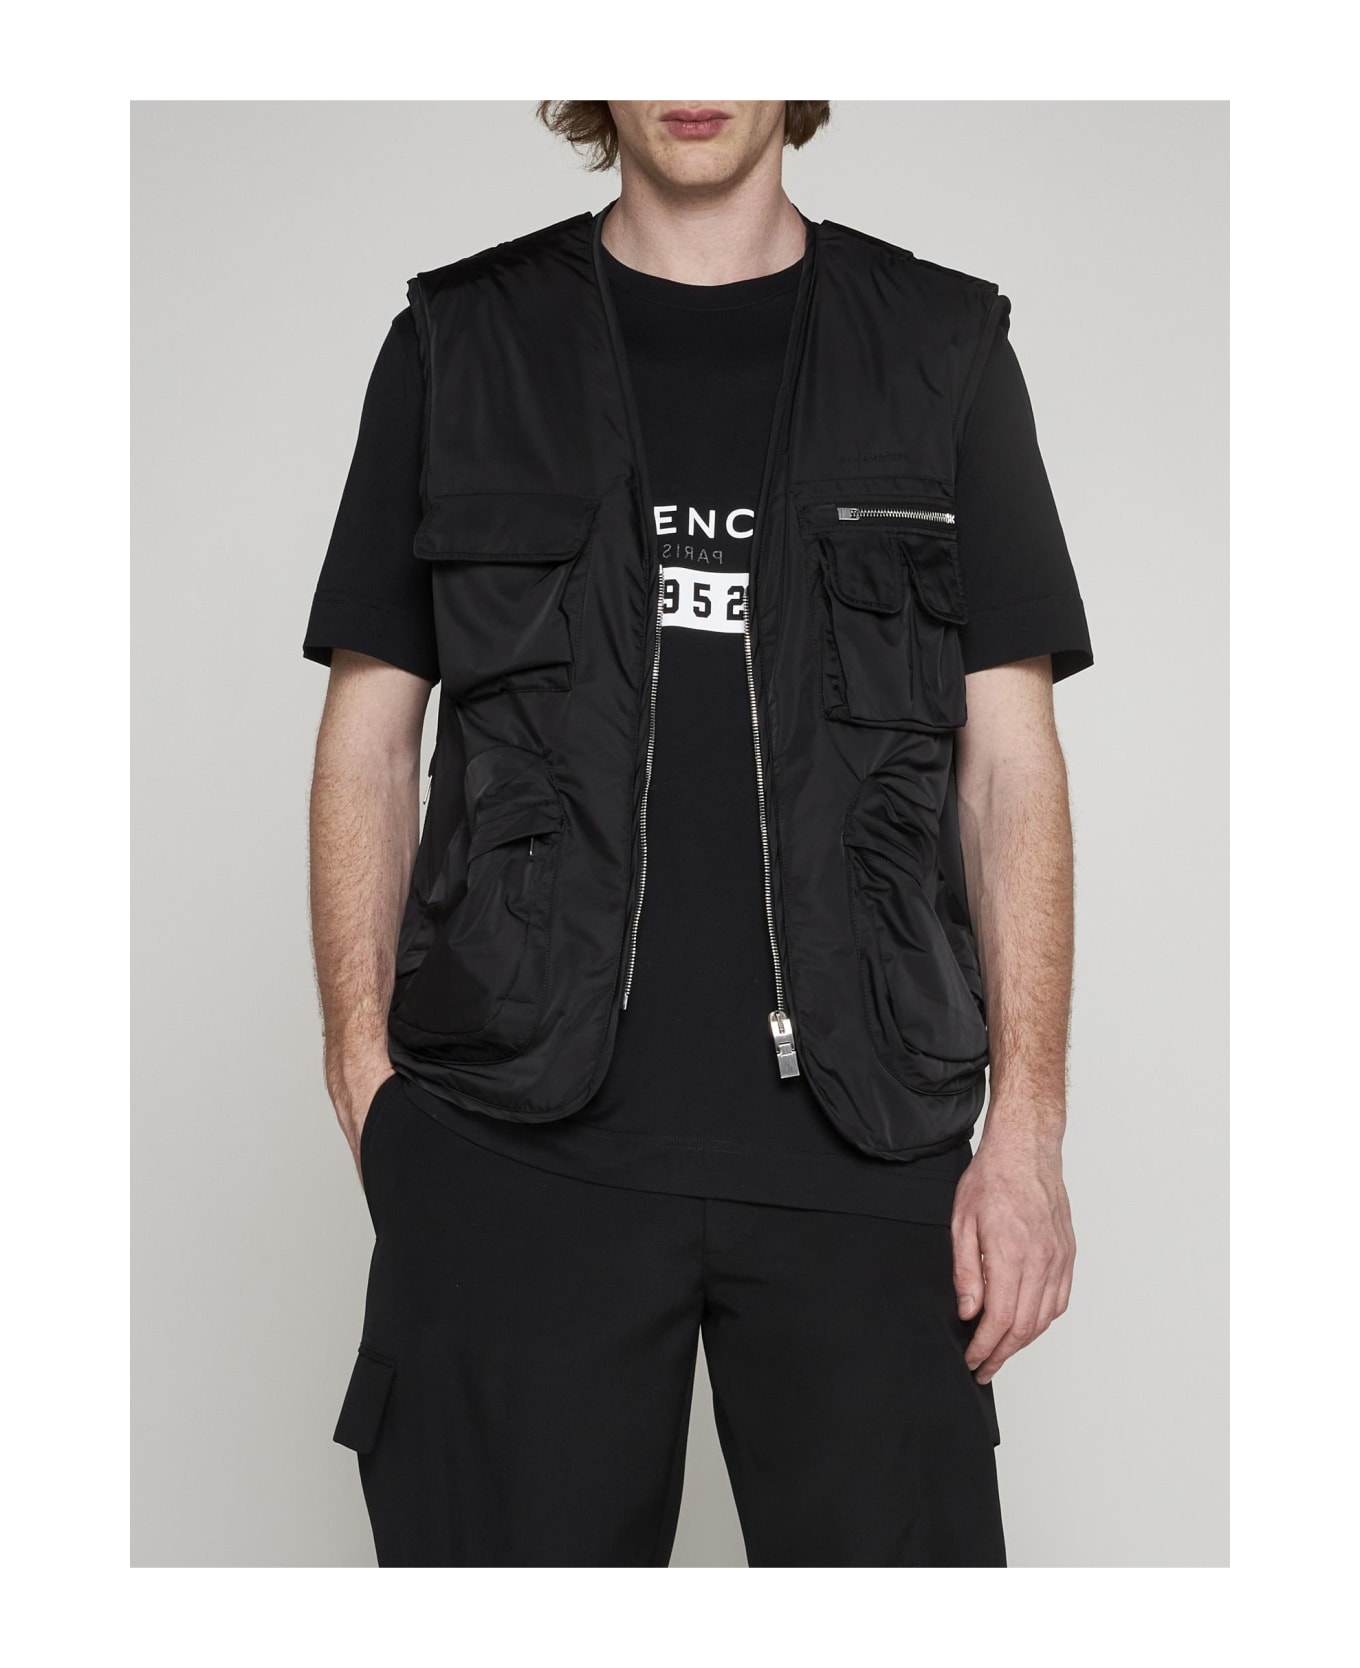 Givenchy Multi-pockets Nylon Vest - NERO ベスト